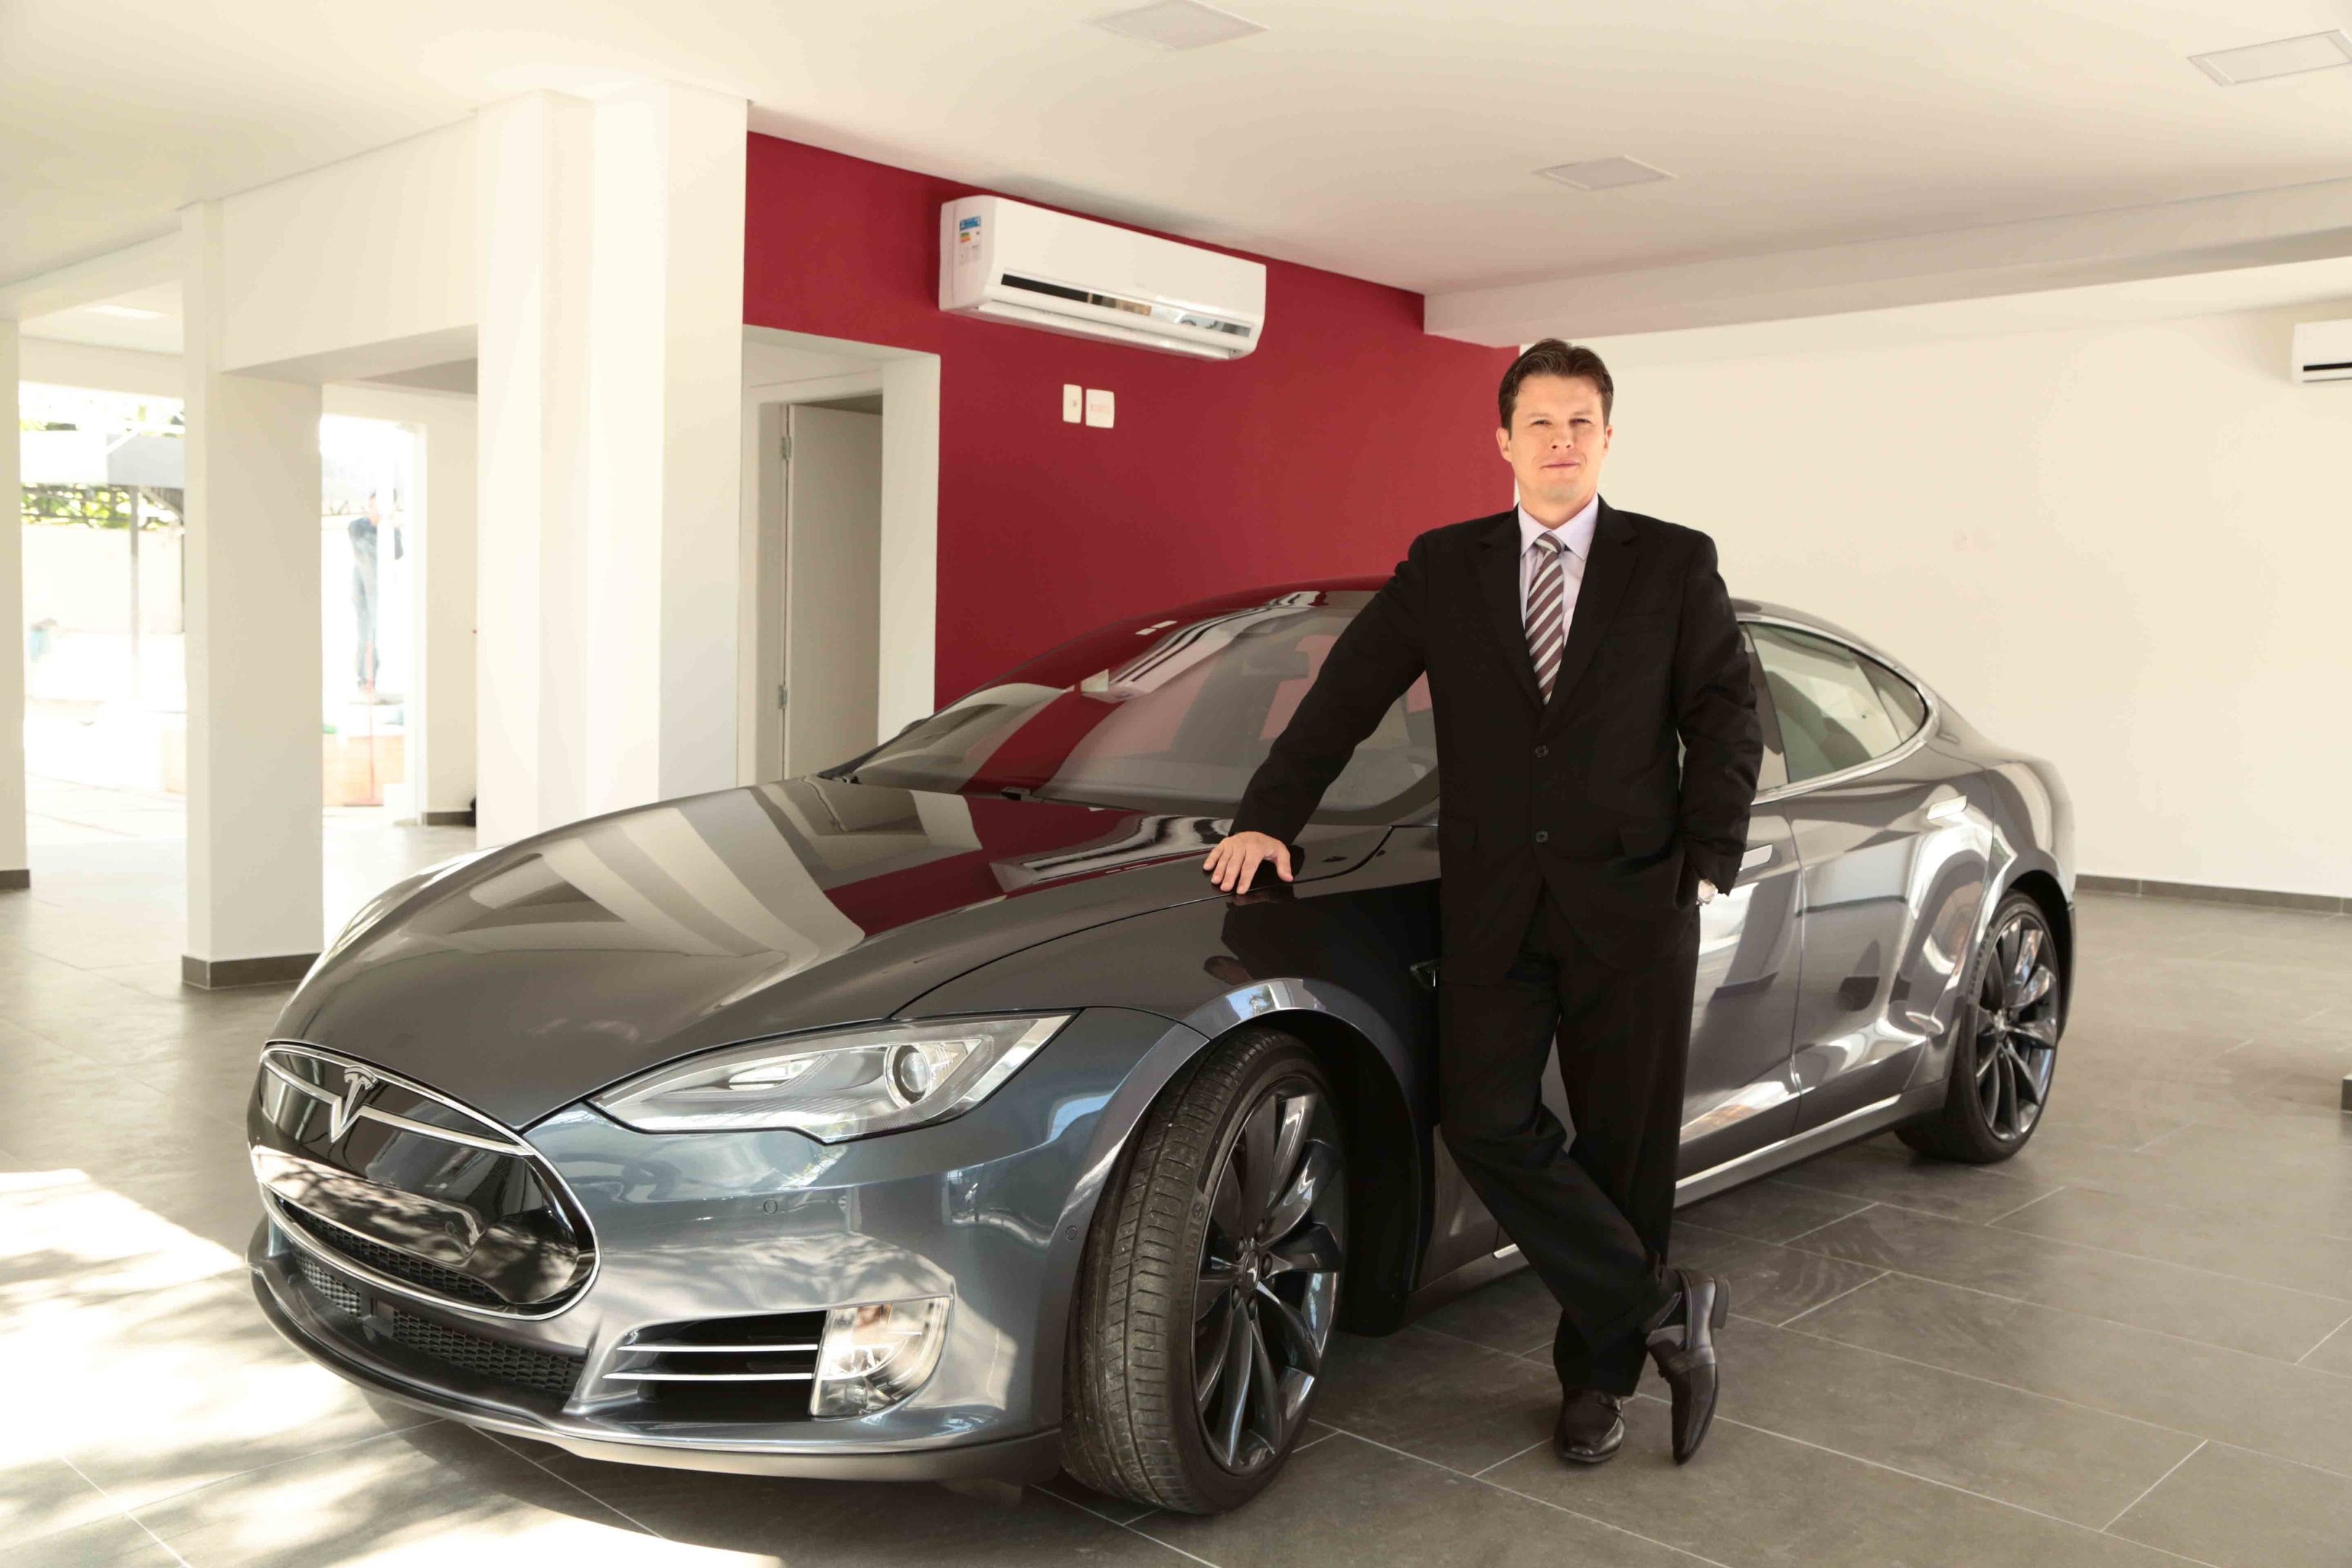 Luciano Di Claro, CEO da Elektra, que trouxe os carros Tesla ao Brasil